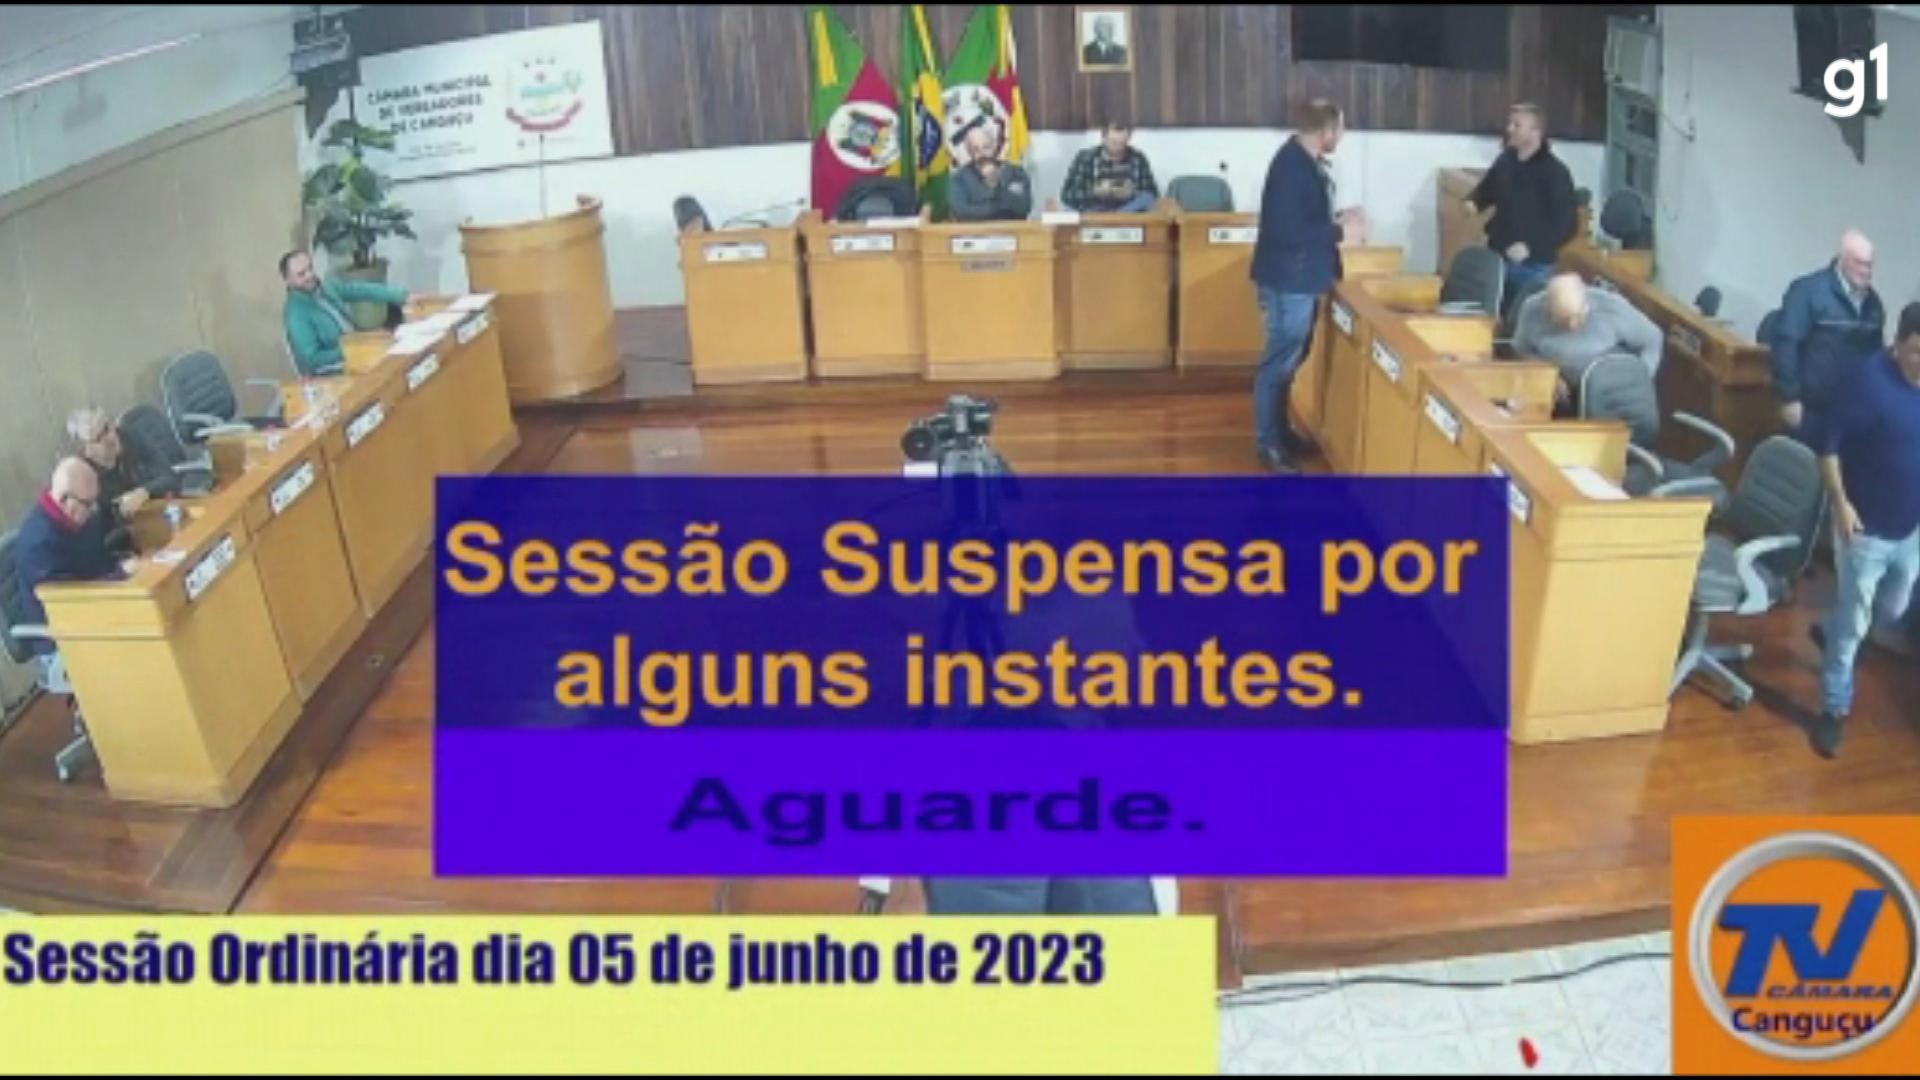 Polícia Civil investiga ofensa de vereador contra servidora durante sessão da Câmara de Canguçu: 'neguinha' 